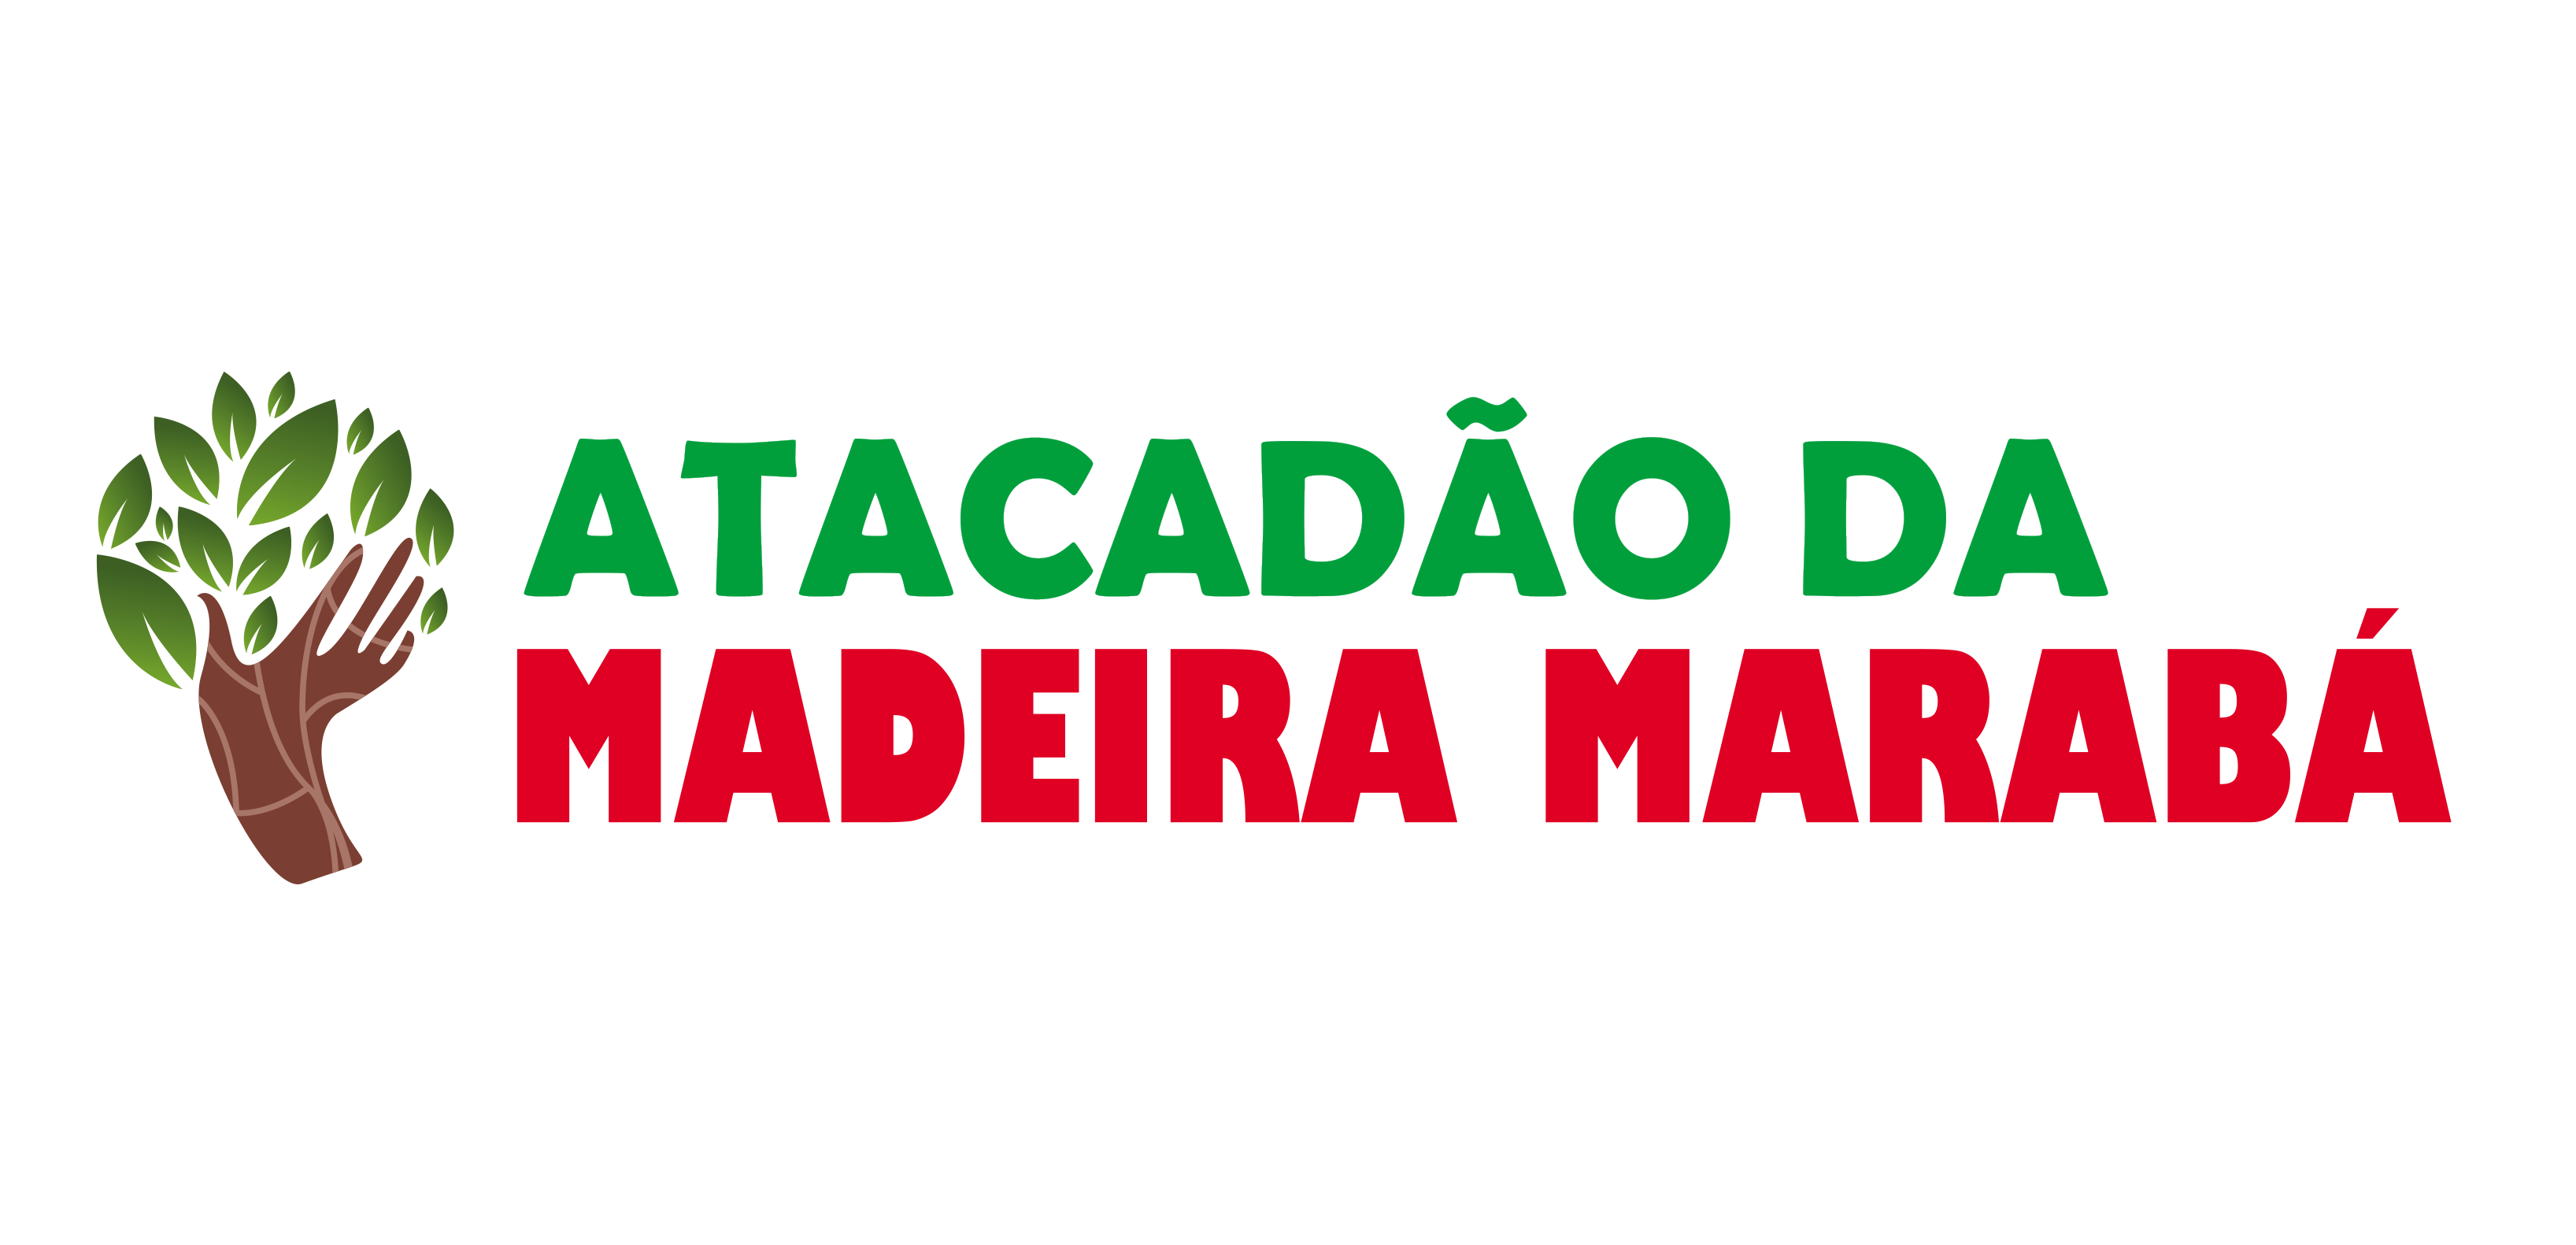 Atacadão da Madeira Marabá